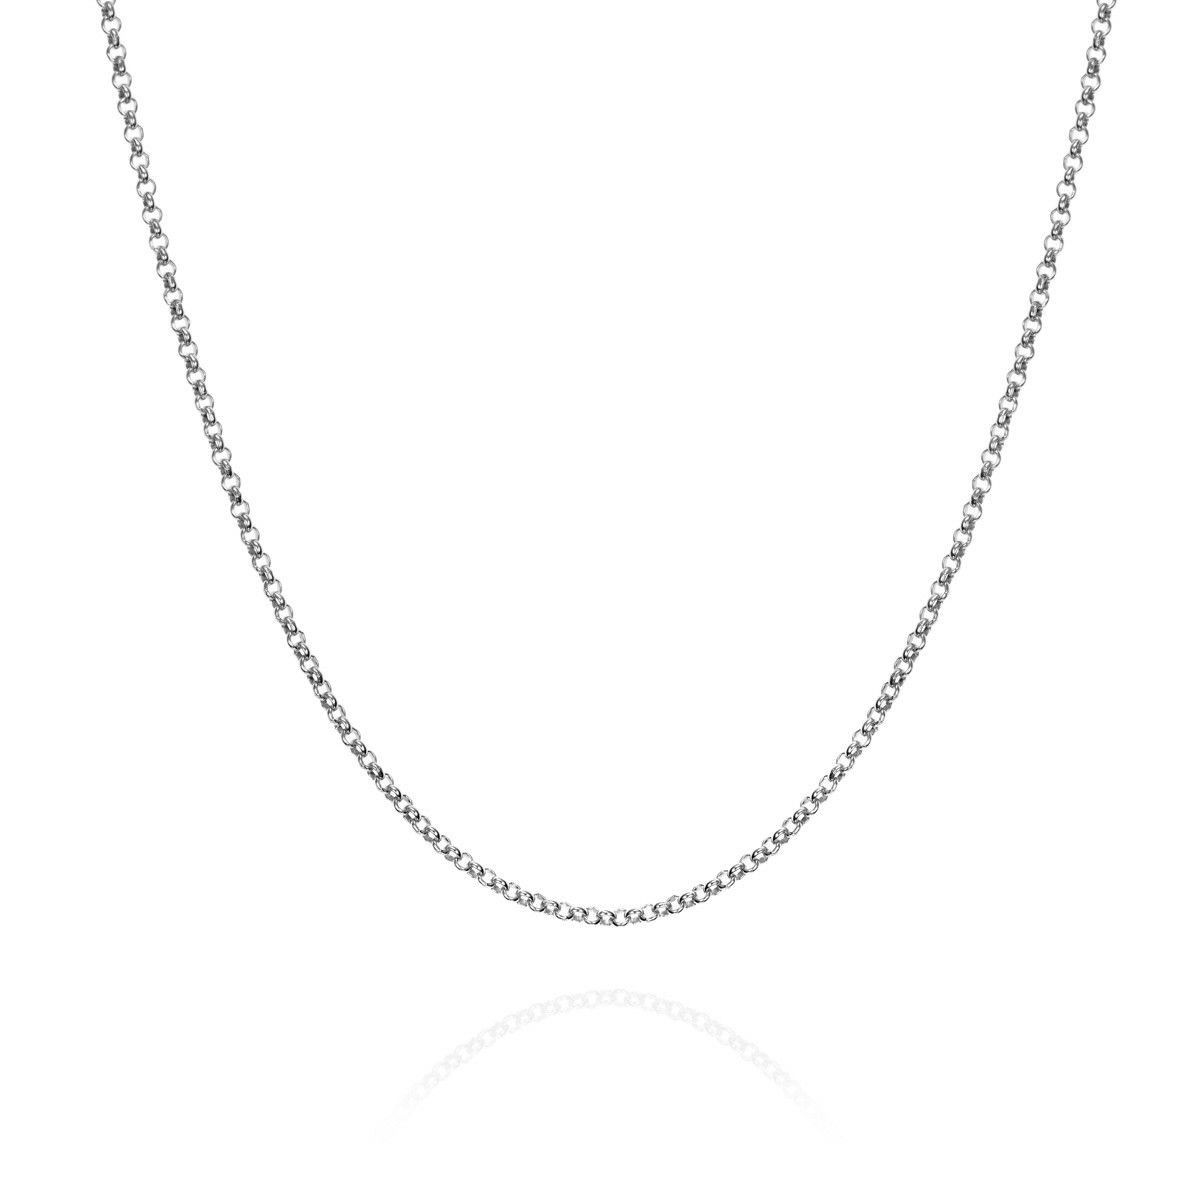 Chain in Silver 45 cm.